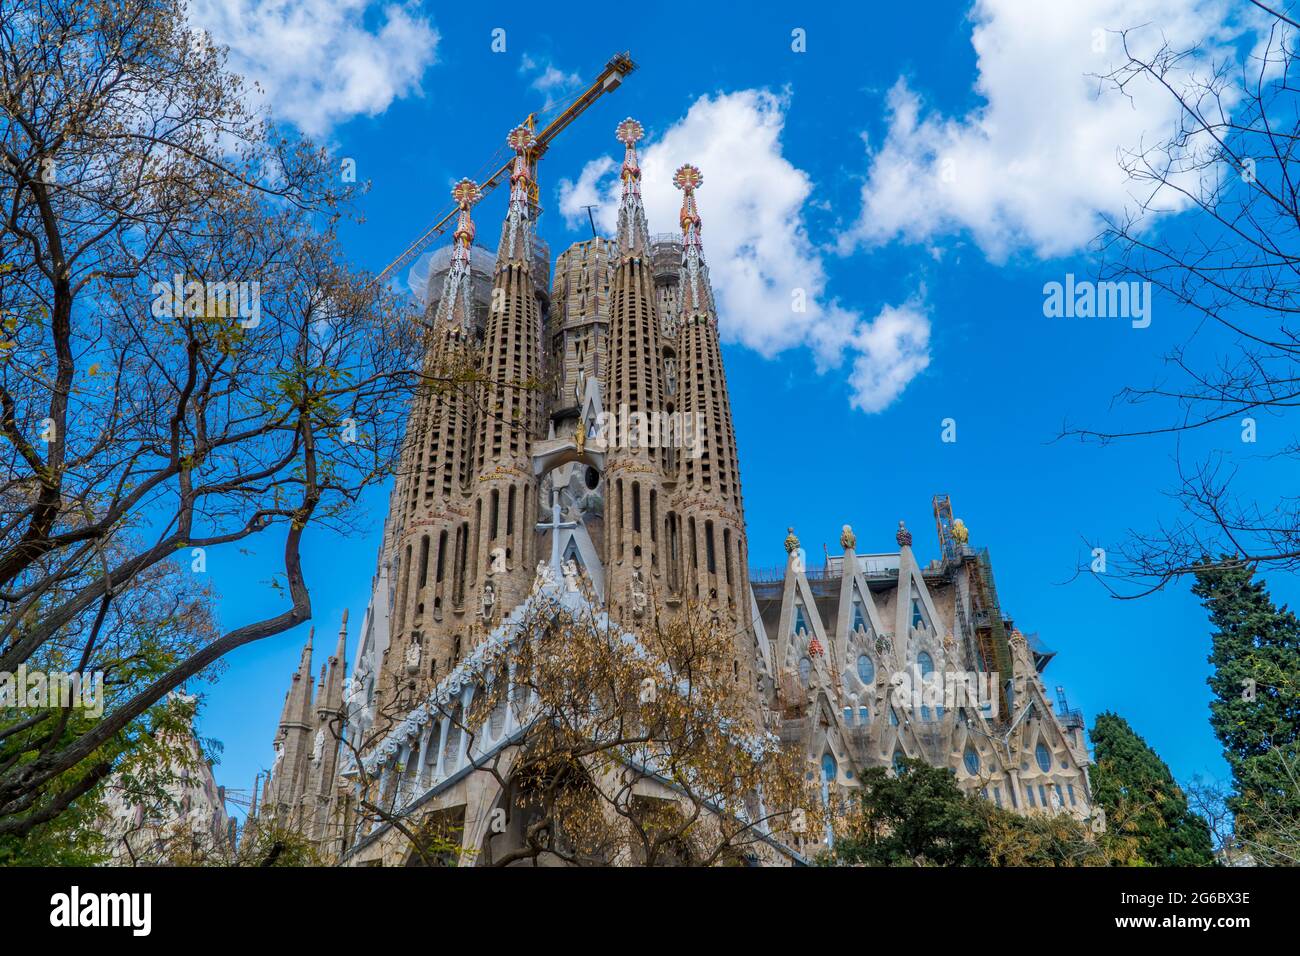 The Sagrada Familia Church in Barcelona, Spain in spring Stock Photo